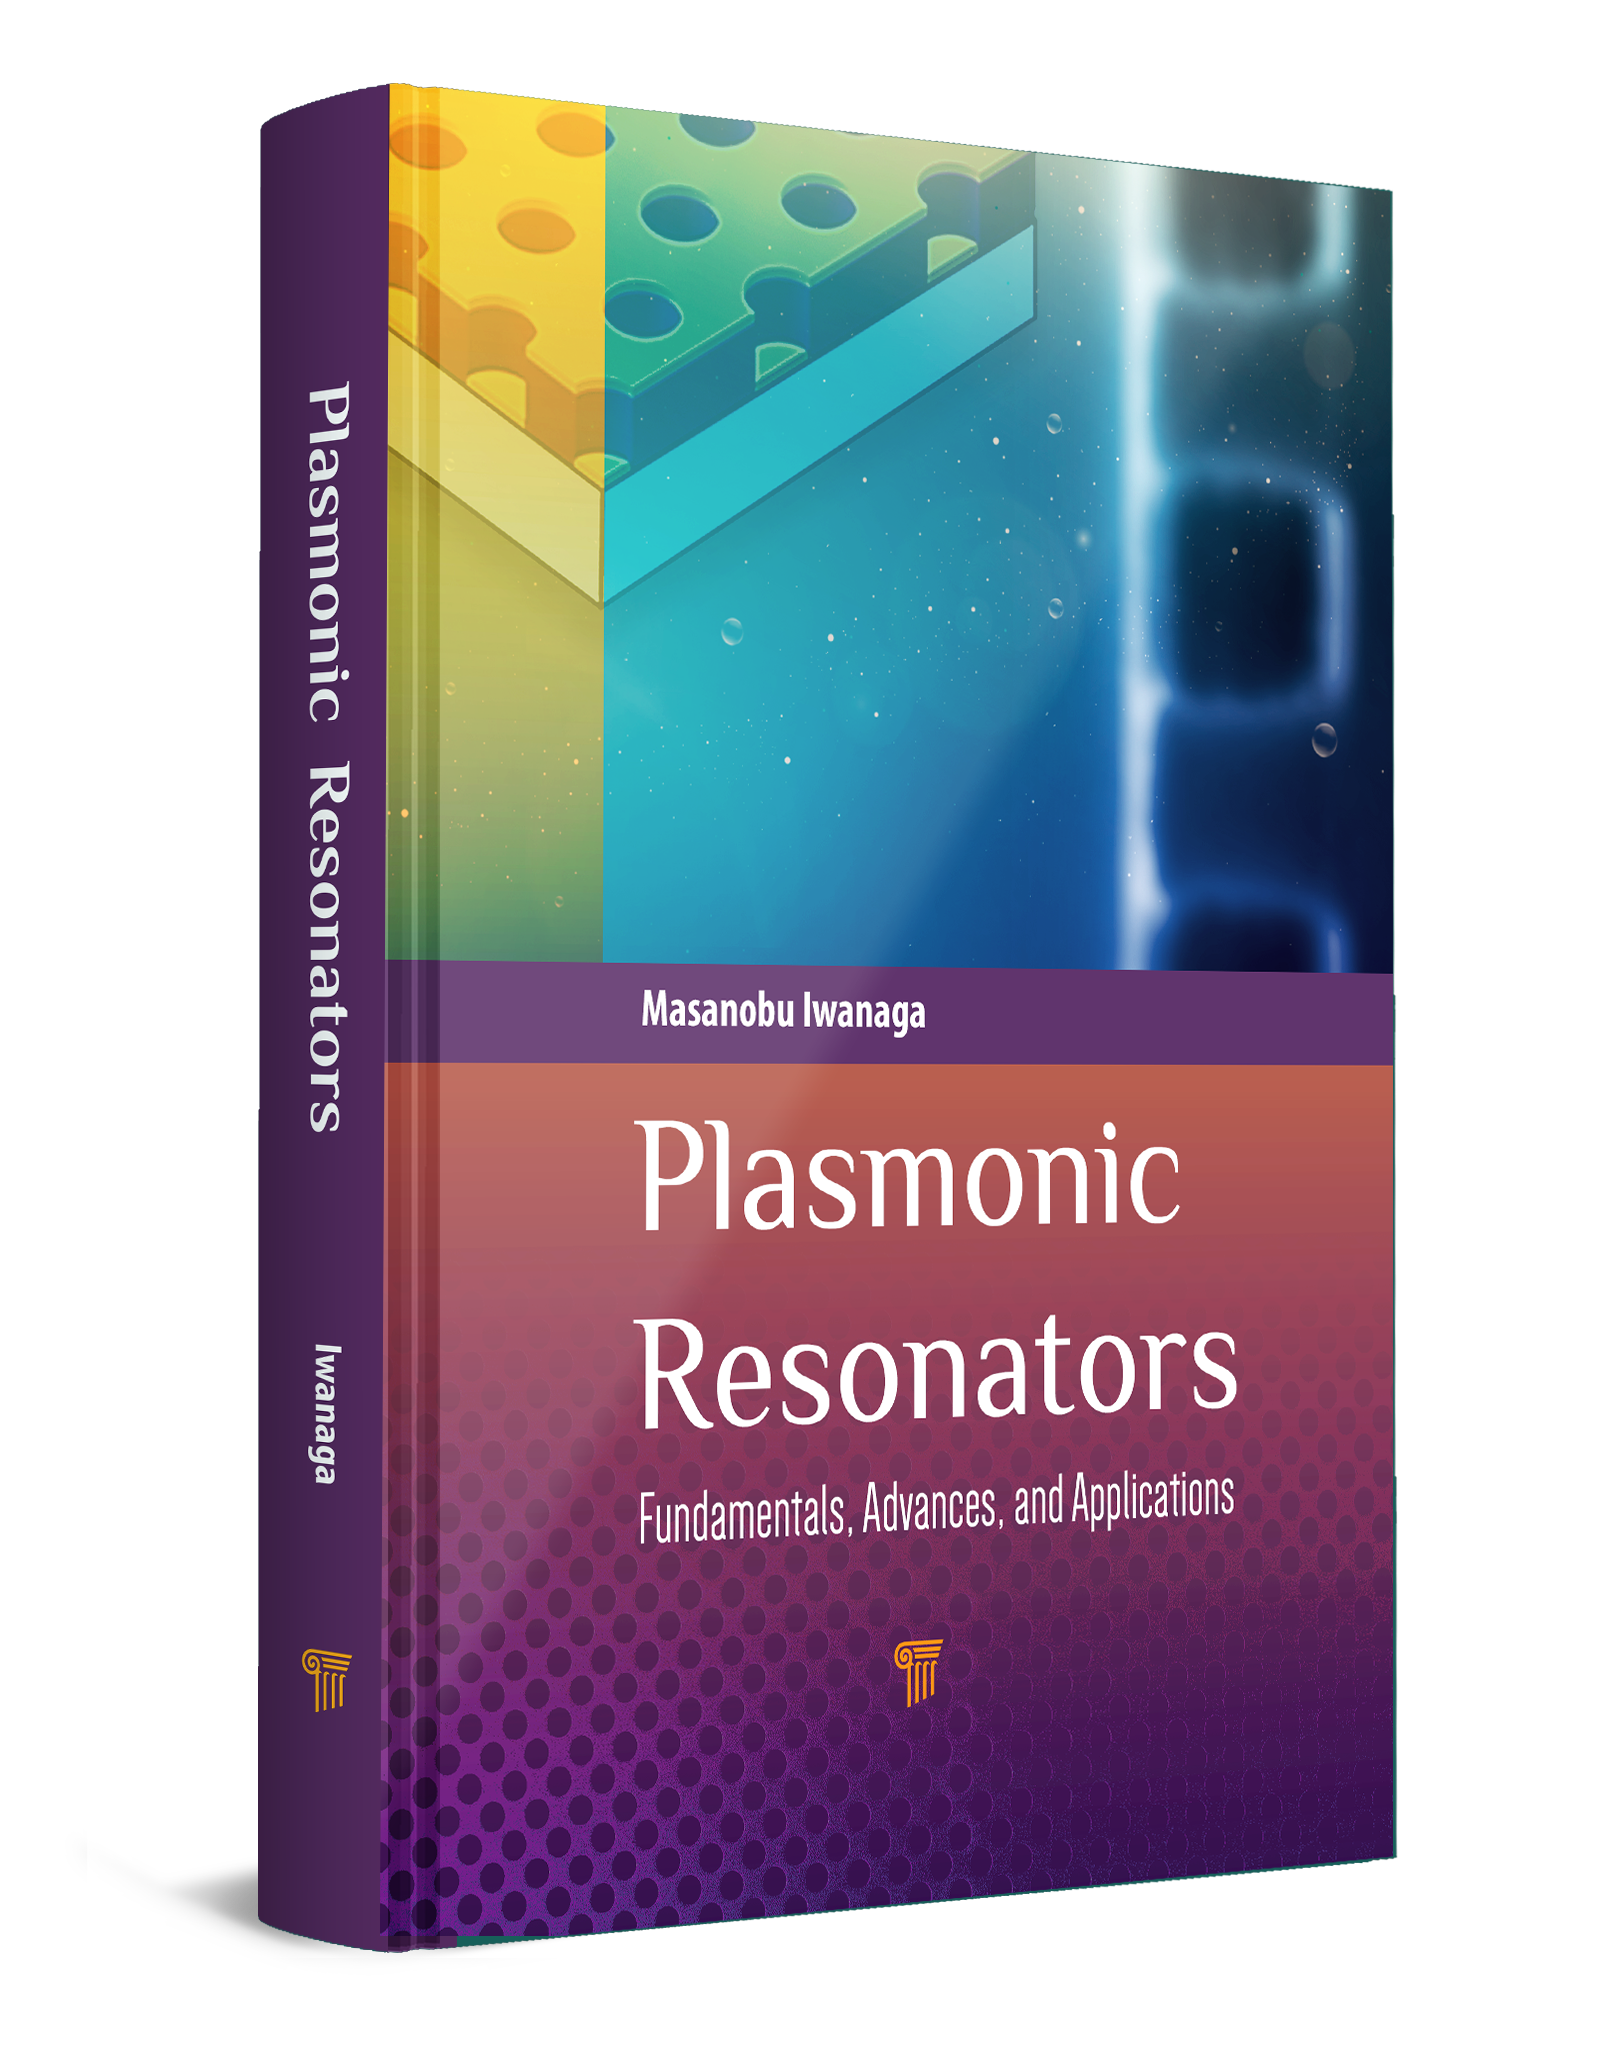 Book "Plasmonic Resonators"